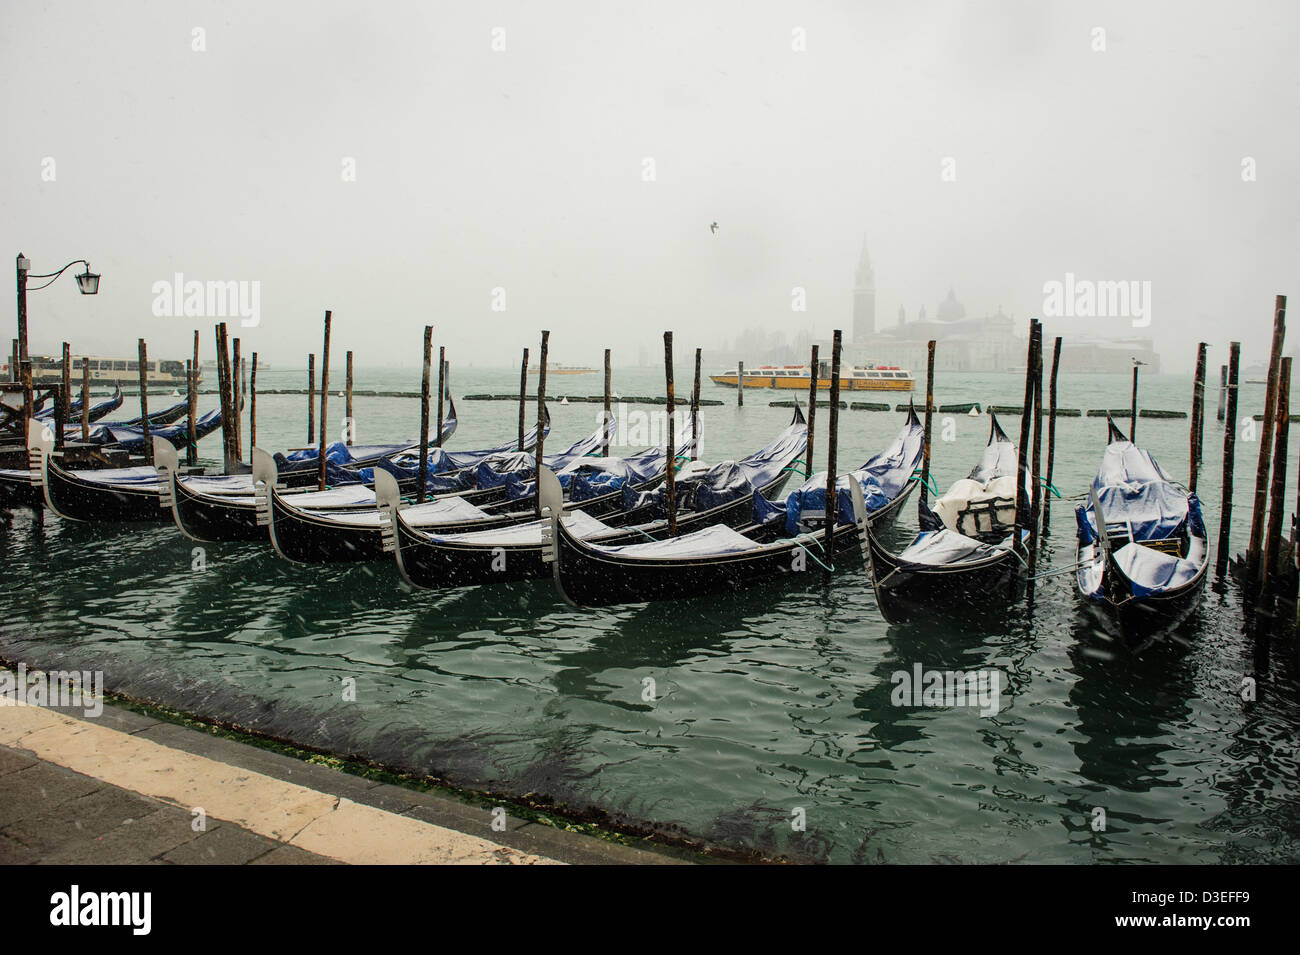 Coperta di neve gondole visto a Venezia in waterfront durante le forti nevicate e maltempo in Venezia. Foto Stock